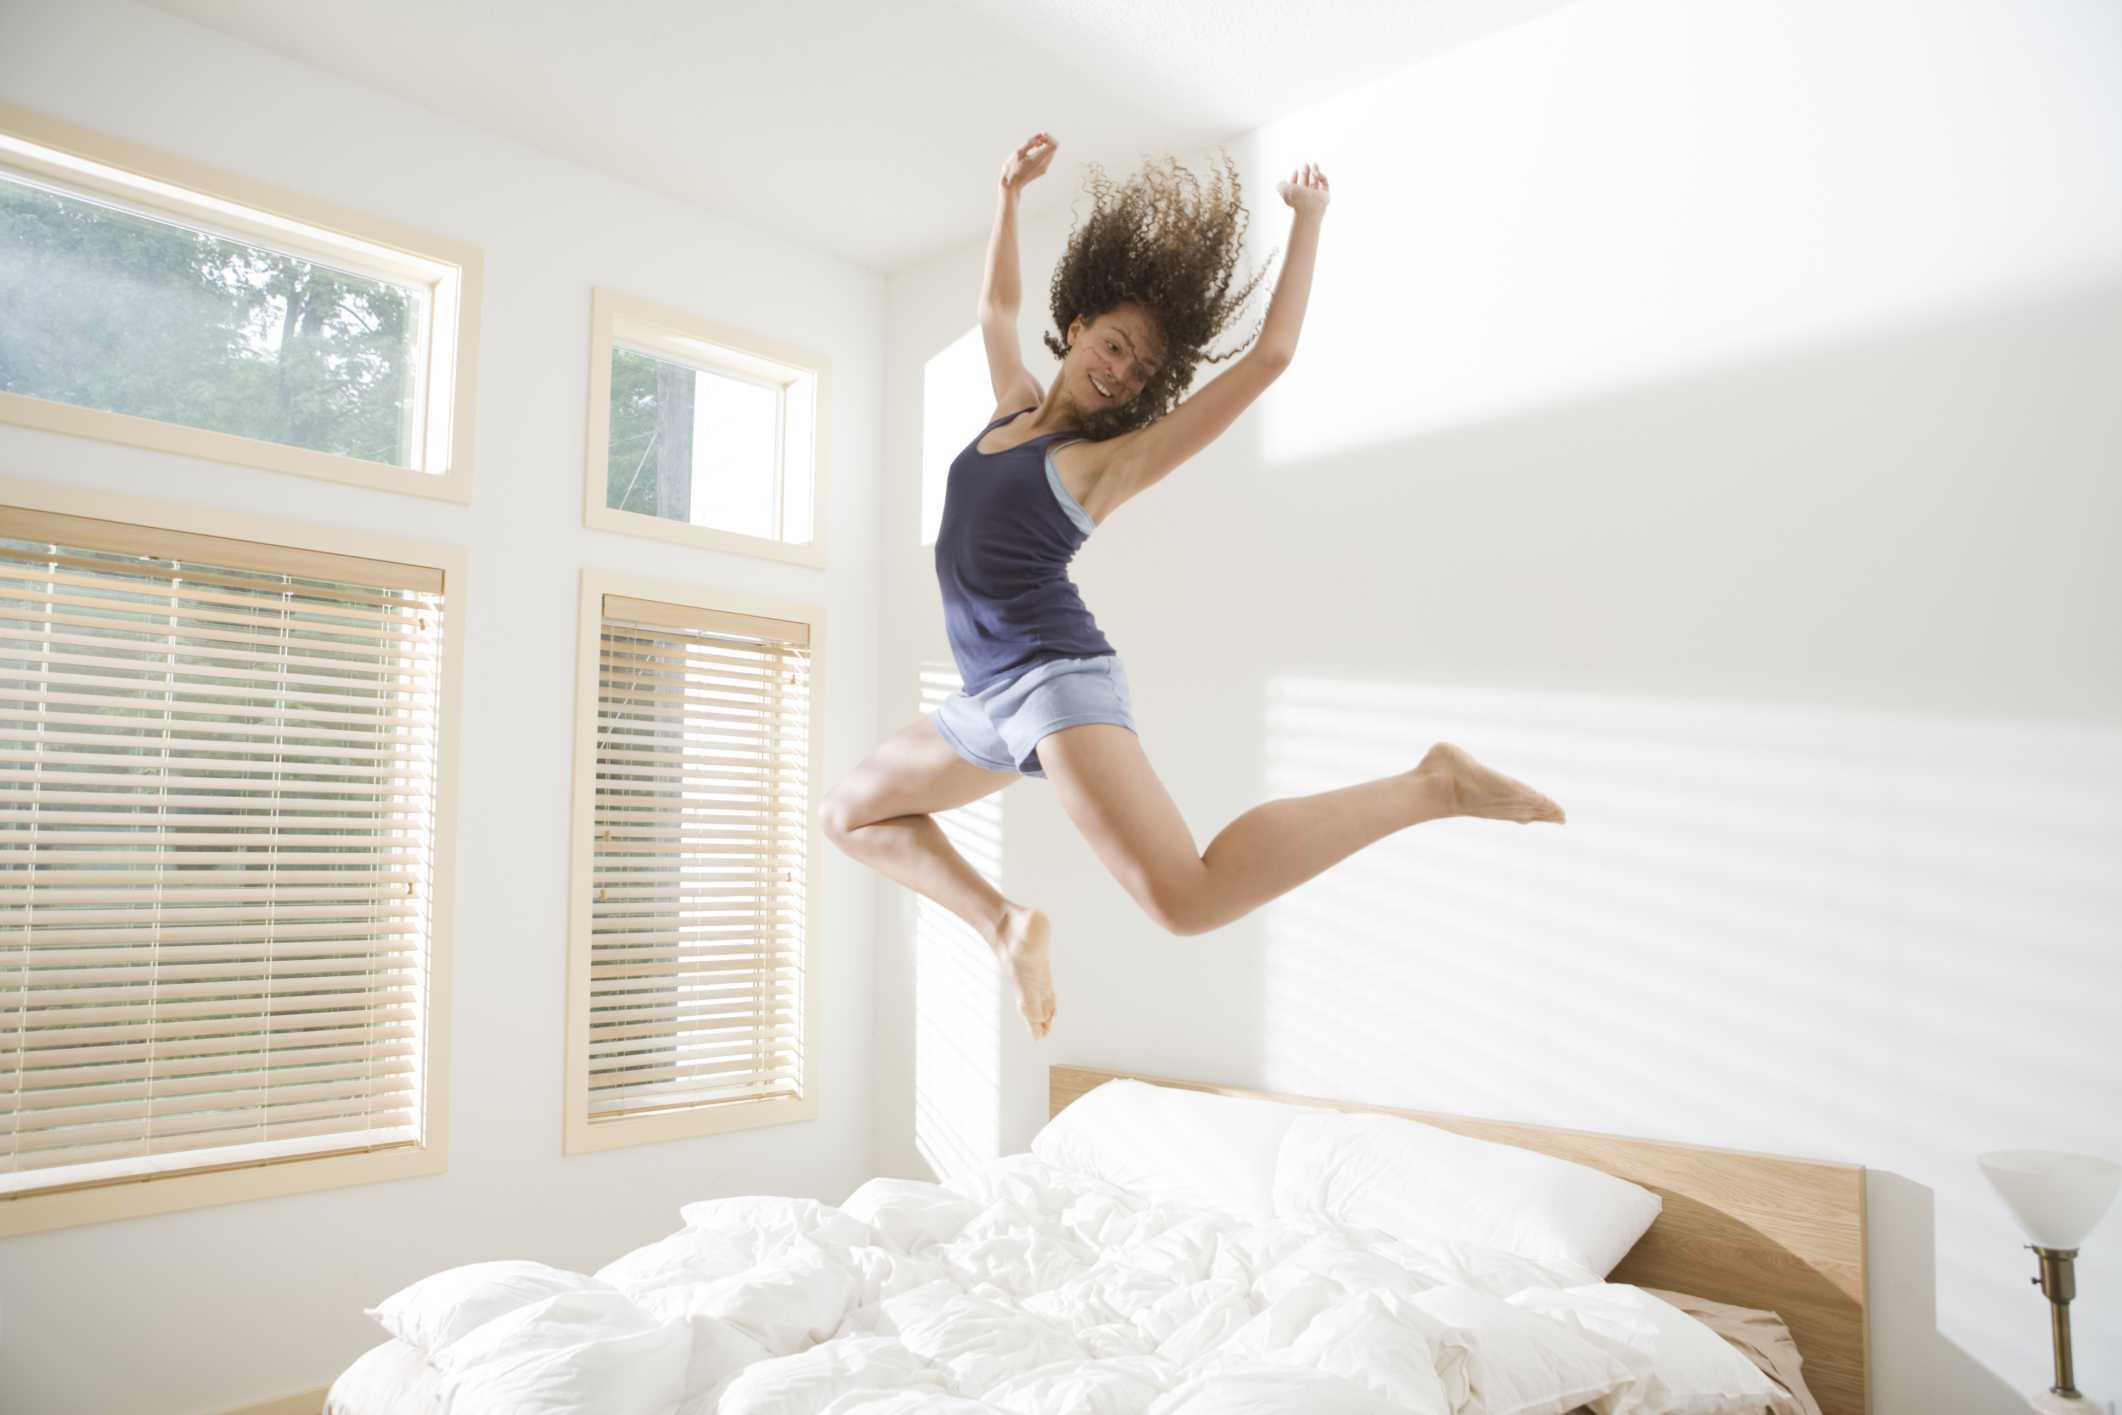 Бодрые веселые песни. Девушка в прыжке. Девушка прыгает. Девушка прыгает на кровати. Бодрость утром.